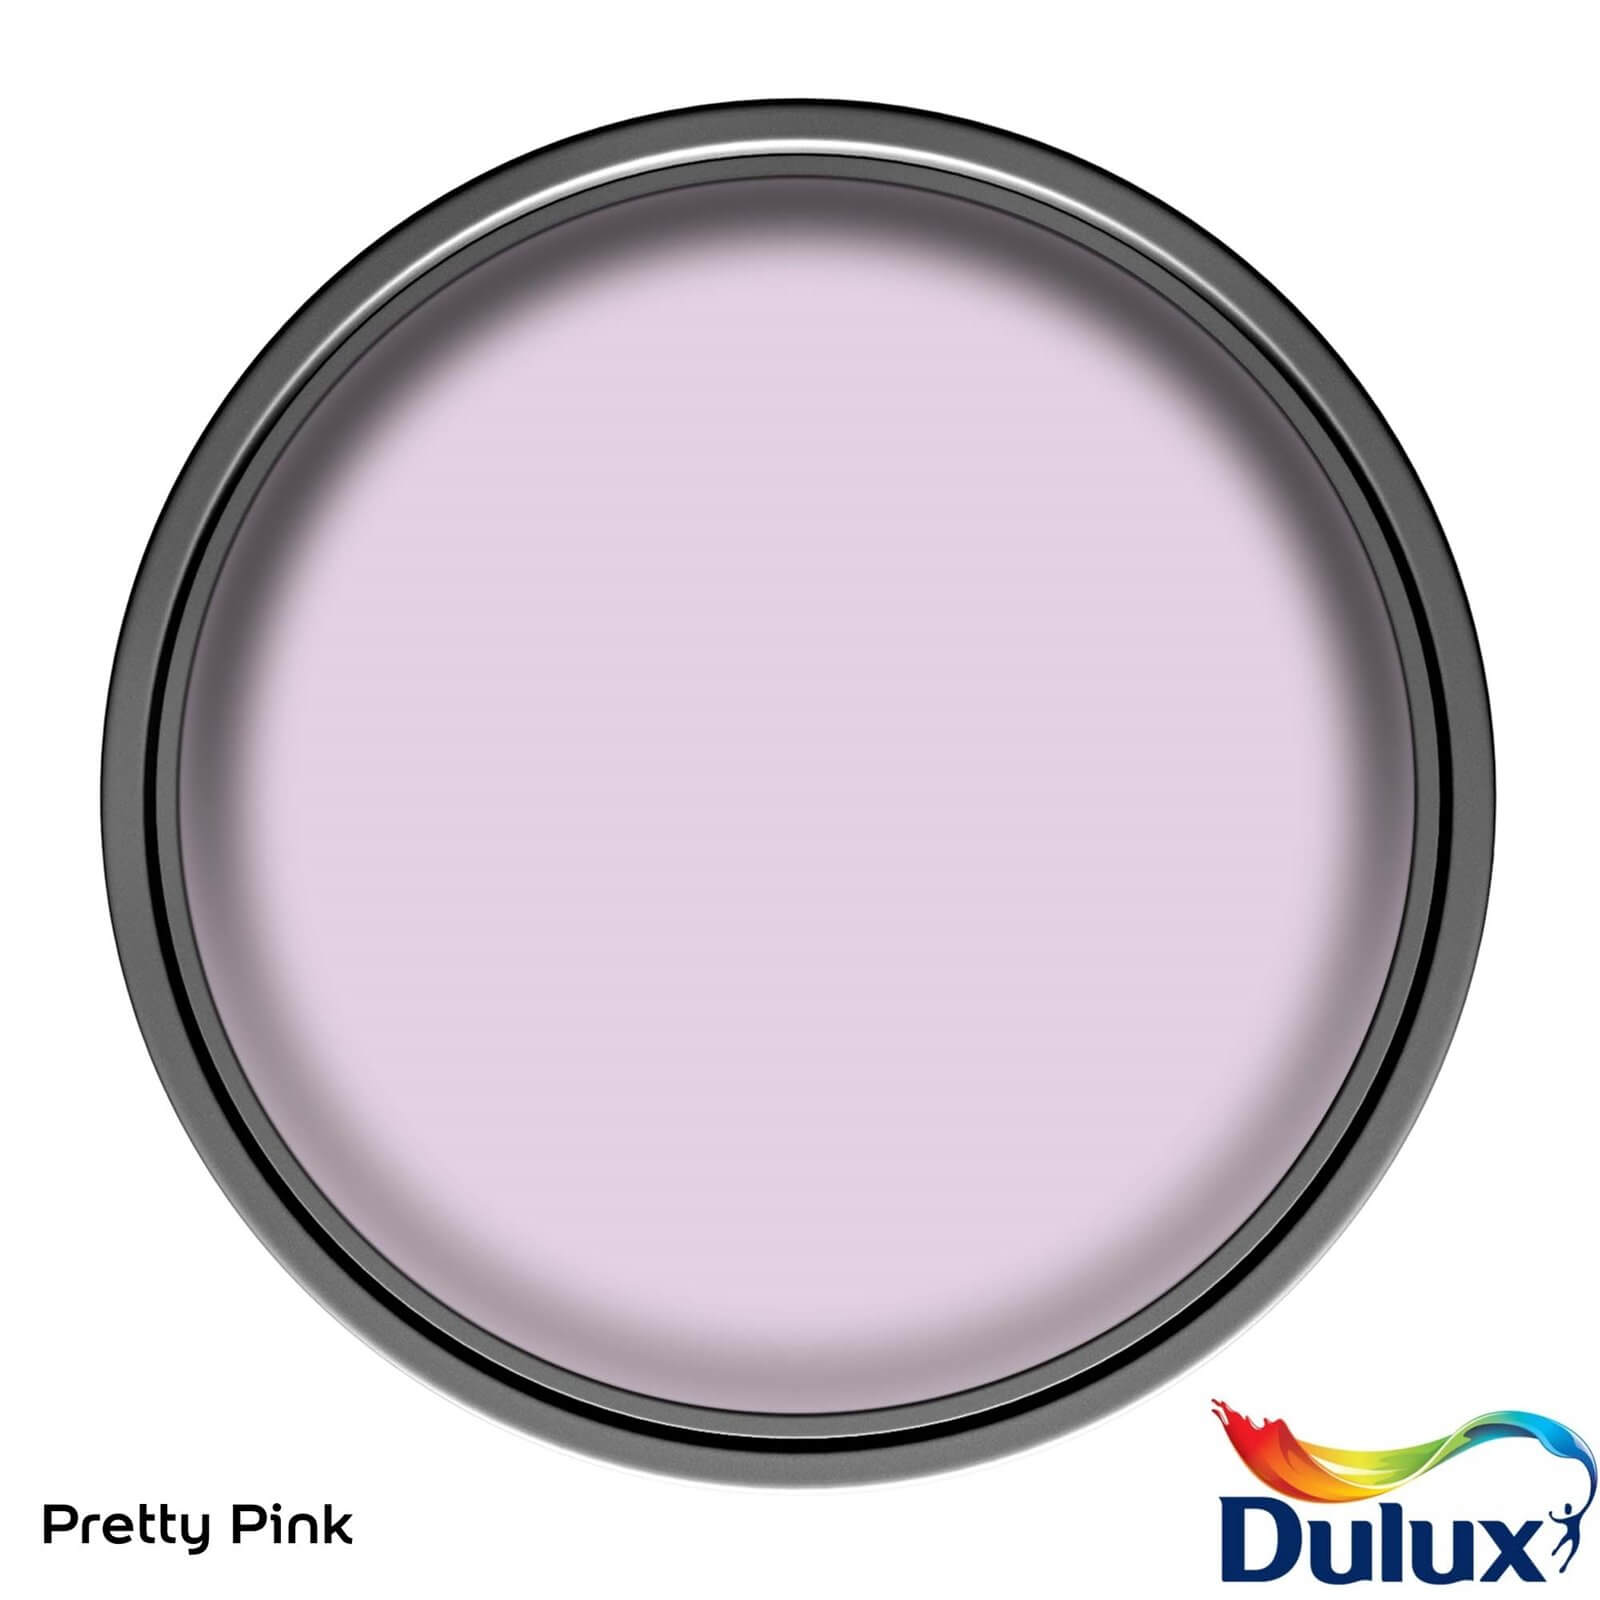 Dulux Easycare Washable & Tough Matt Paint Pretty Pink - 2.5L